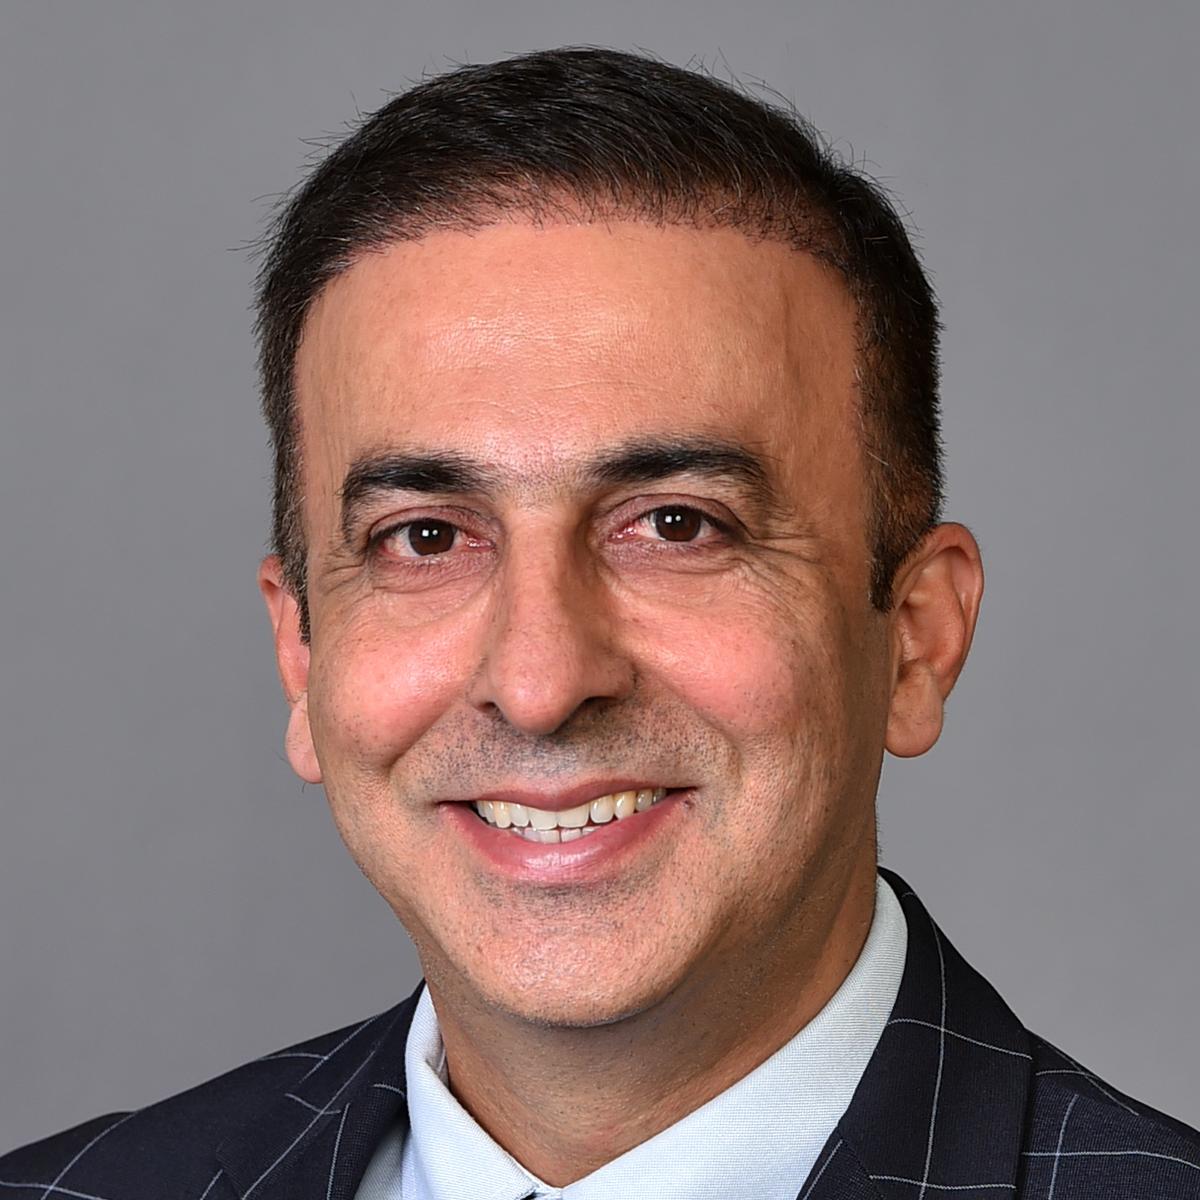 Mohammed Khan, MD